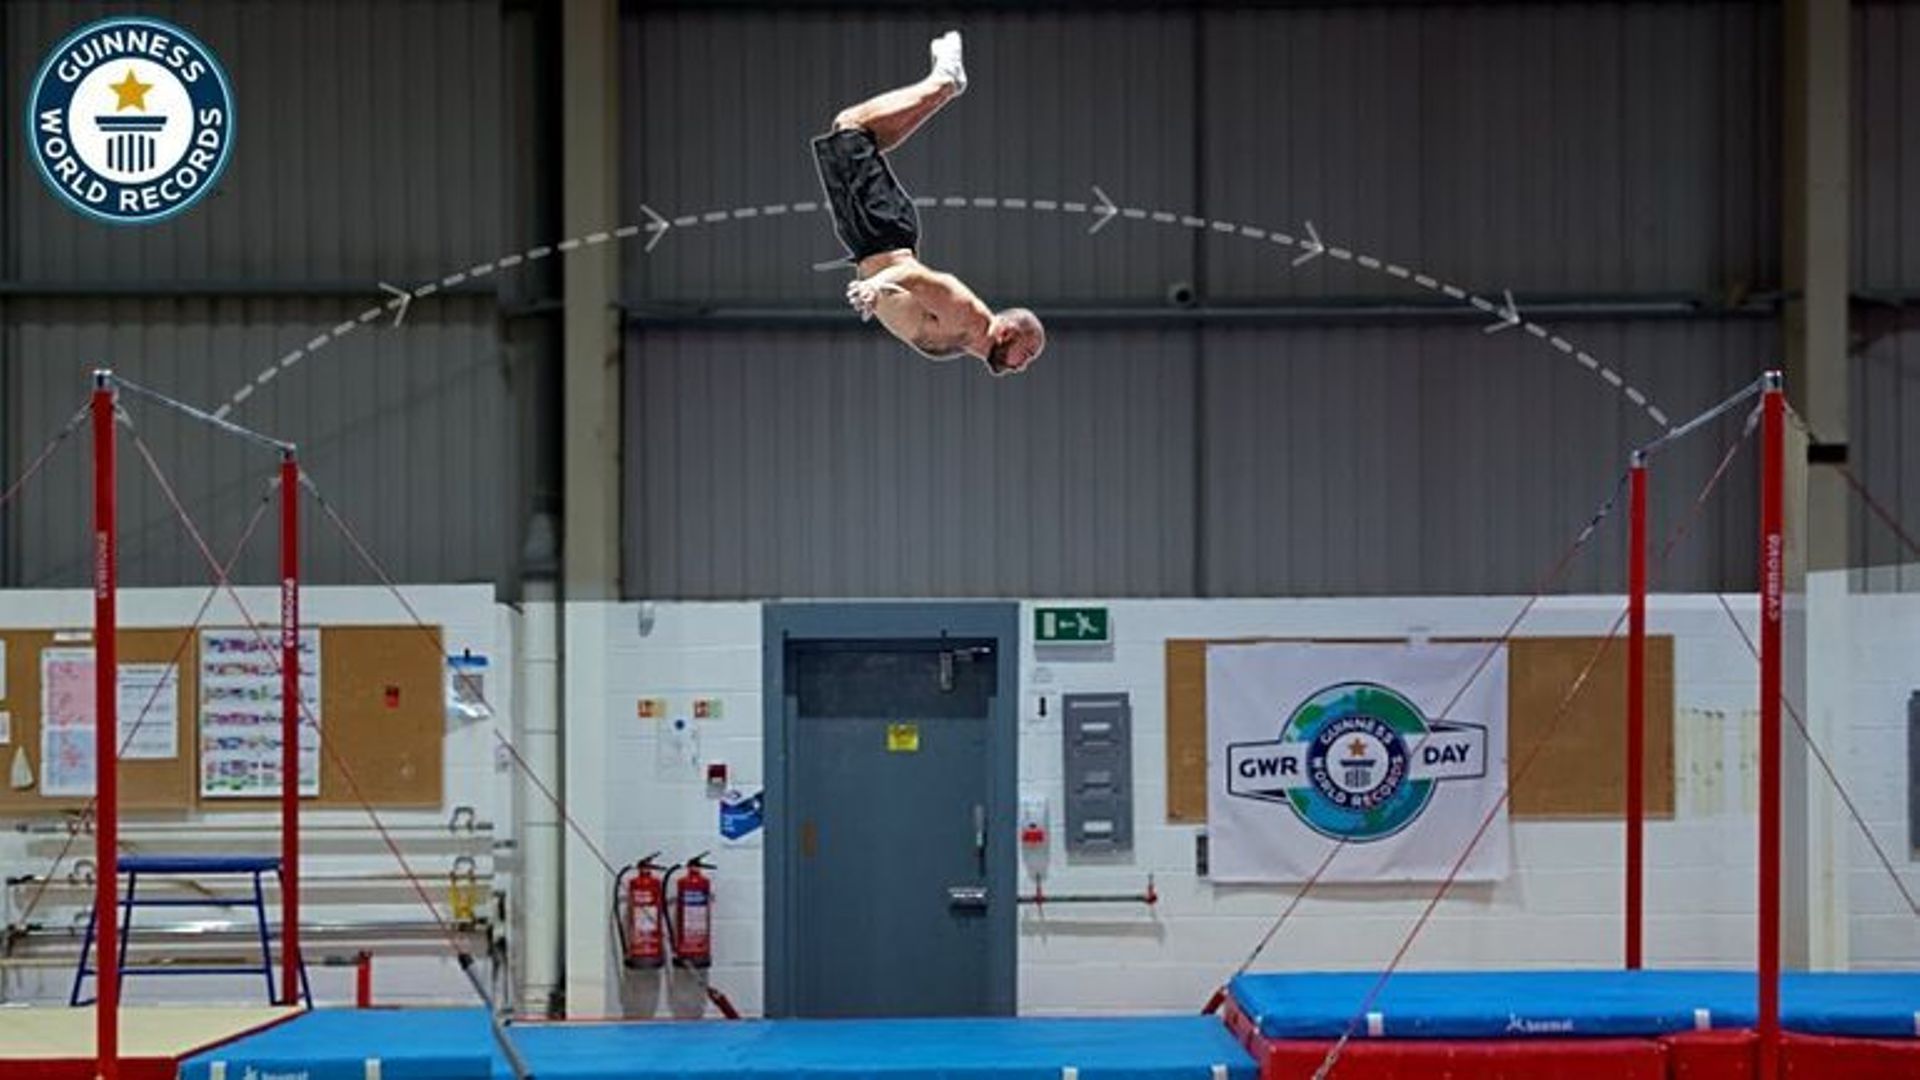 Le gymnaste britannique Ashley Watson s’envole sur 6 mètres de long et bat son propre record du monde du plus long backflip entre deux barres.